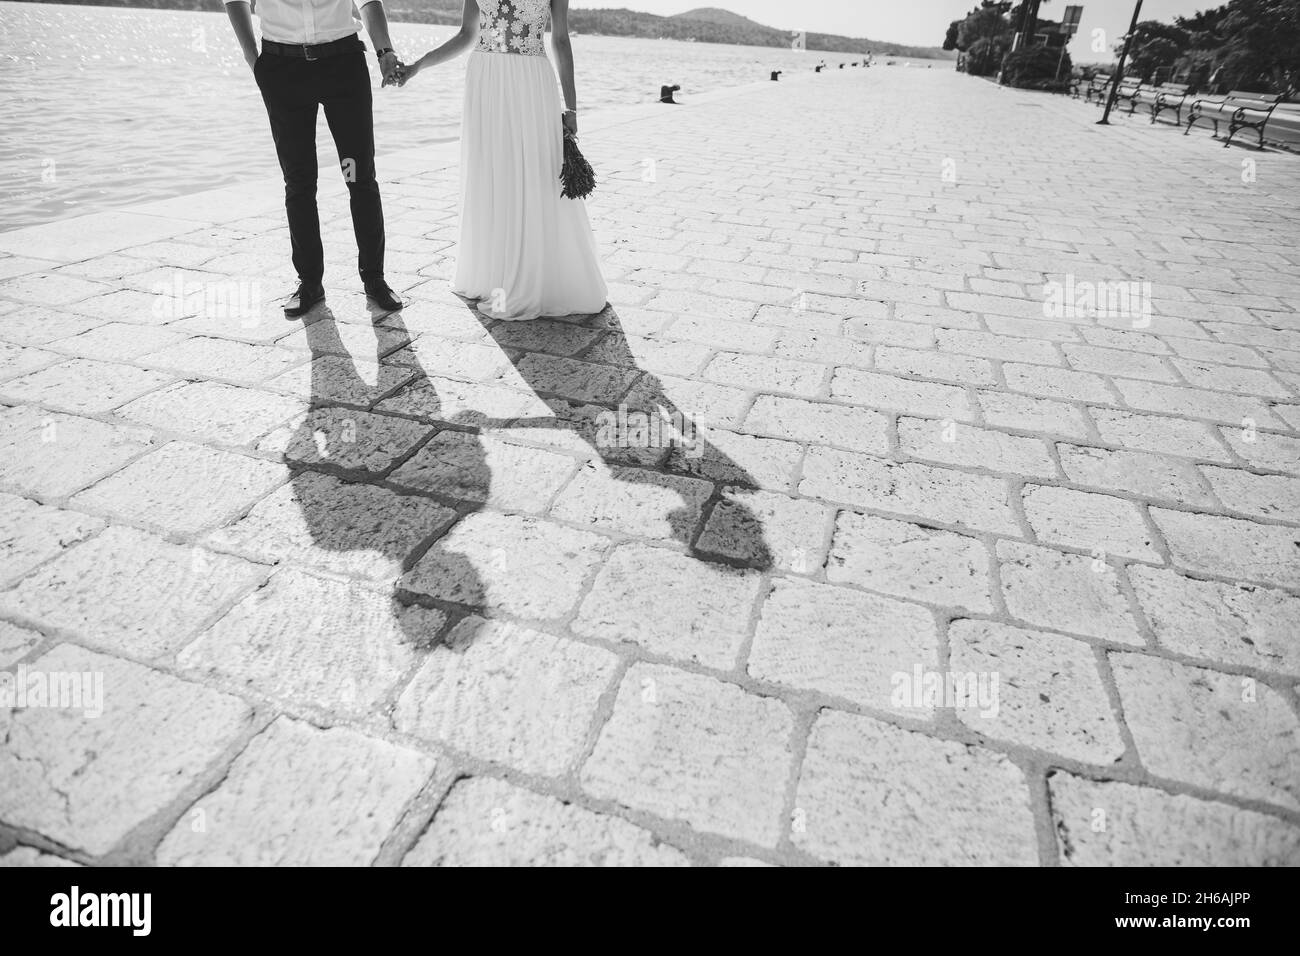 Braut und Bräutigam halten die Hände und stehen auf den Pflastersteinen am Meer. Schwarzweiß-Fotografie Stockfoto